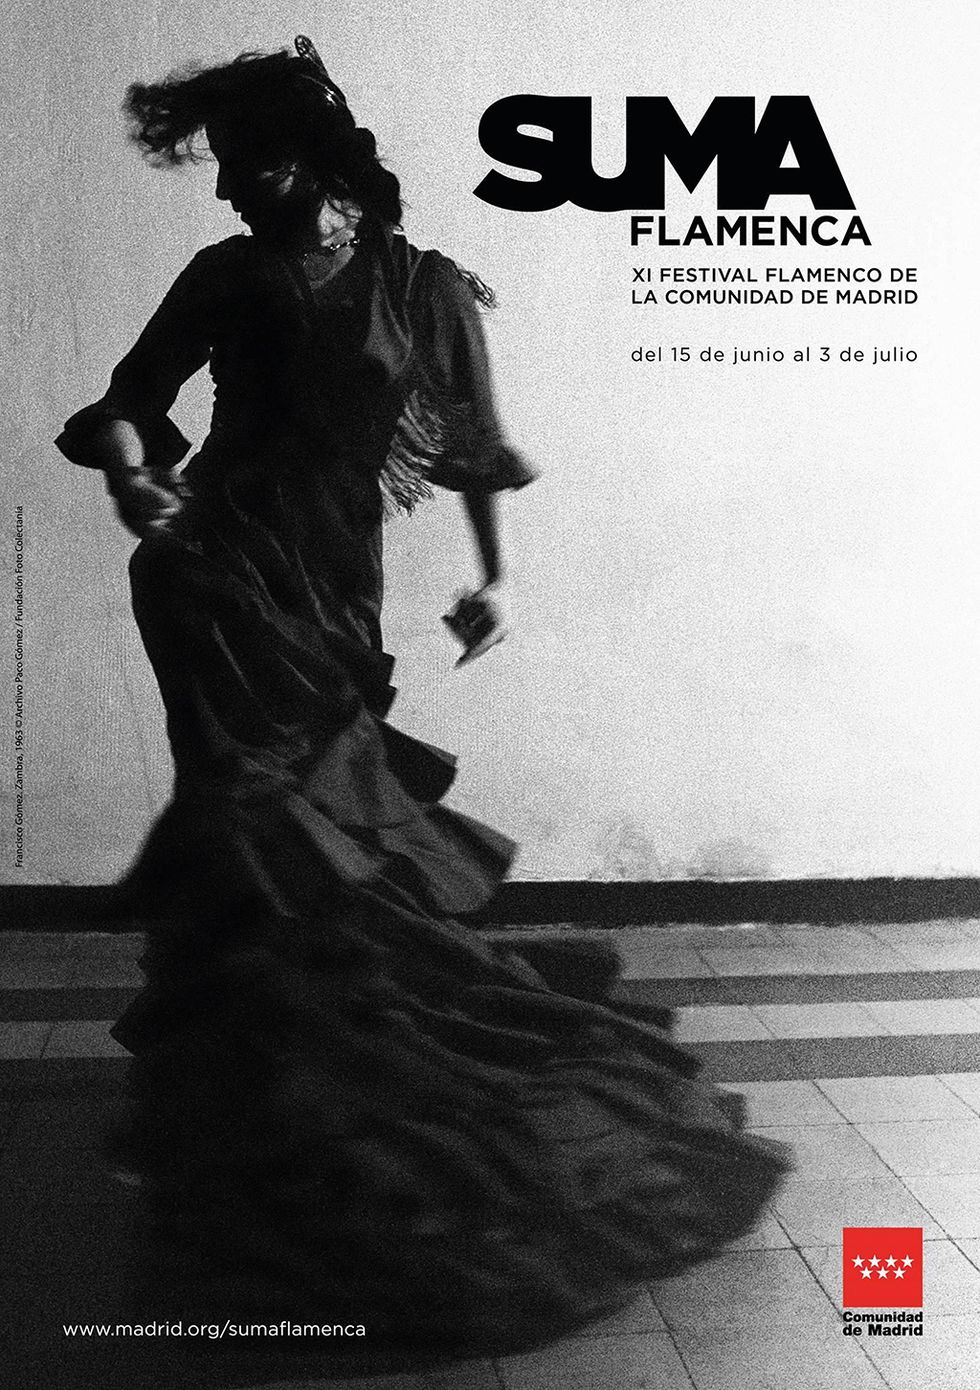 <p><a href="http://www.madrid.org/sumaflamenca/2016/index.html" target="_blank">Suma Flamenca,</a> el Festival Flamenco de la Comunidad de Madrid, llega a su undécima edición convertido en uno de los referentes de los faralaes y el cante jondo. Hasta el 3 de julio, y bajo la dirección de Aida Gómez, se acercarán a diversos teatros de la región artistas de la talla de Vicente Amigo, Estrella Morente, Mayte Martín, Rancapino chico... Además, el 20 y 2l 25 de junio el festival ofrece la posibilidad de asistir a unas clases magistrales de la mano de Jorge Pardo y Farruquito, respectivamente.</p><p>&nbsp;</p>